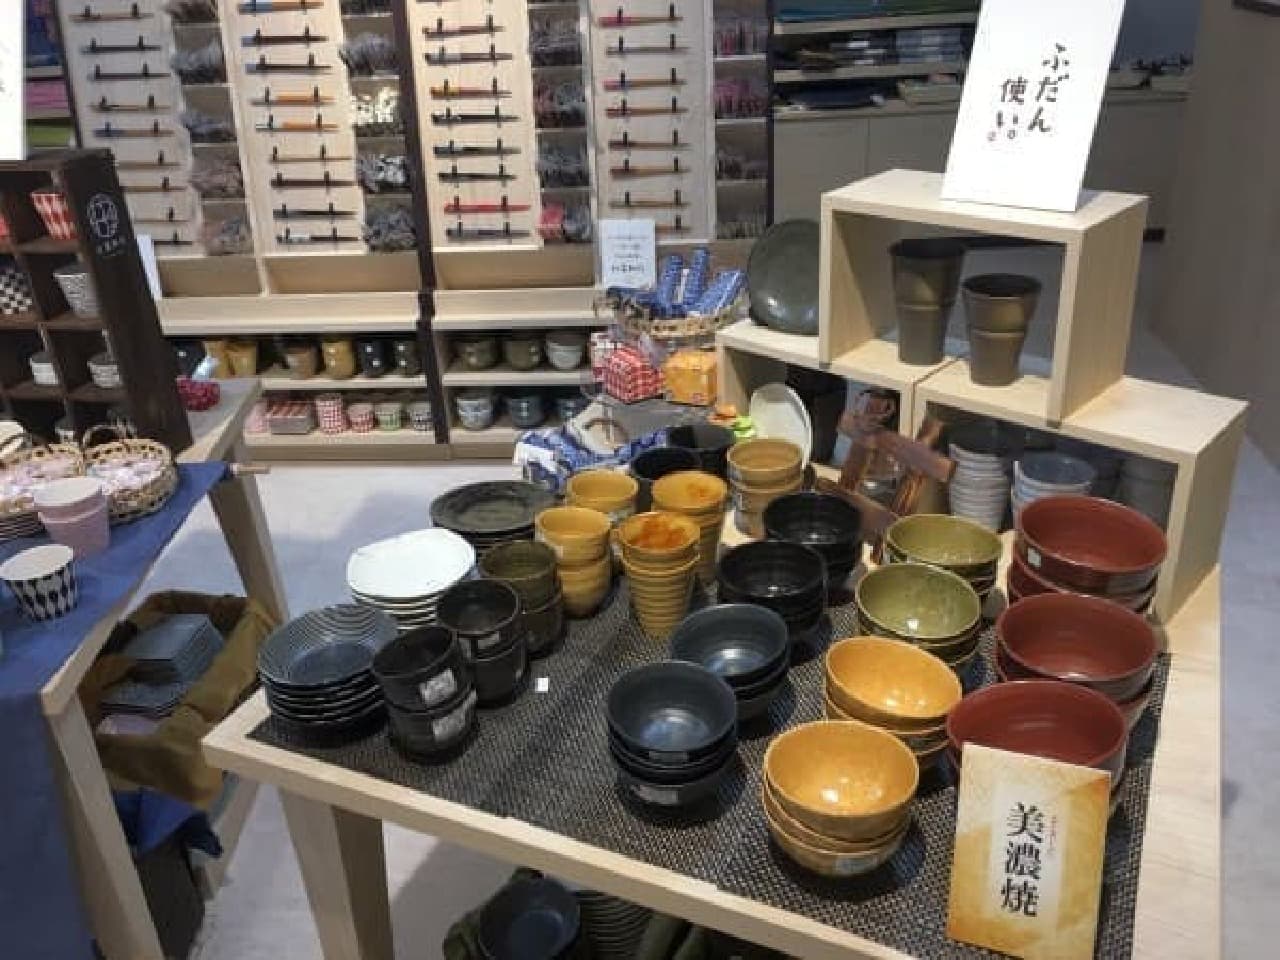 Japanese miscellaneous goods specialty store "Wana Wana KURASHI"